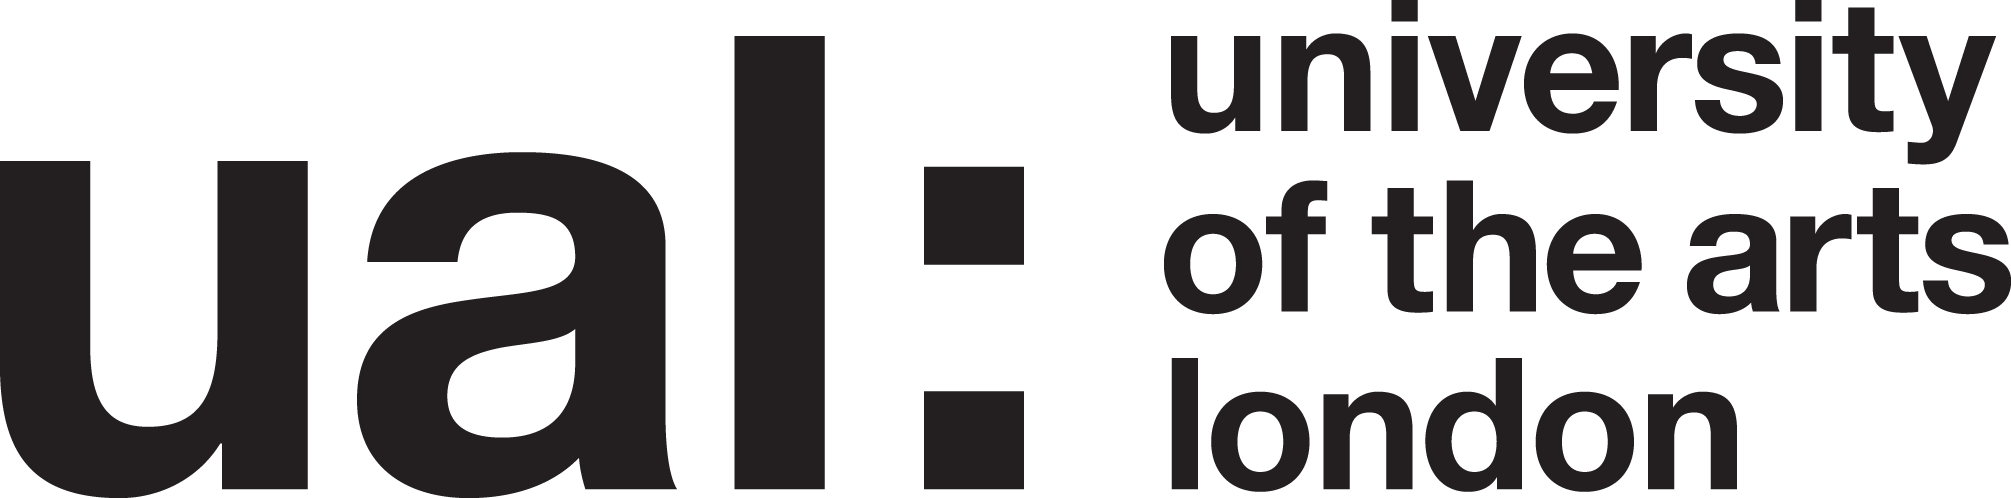 ual-logo.png